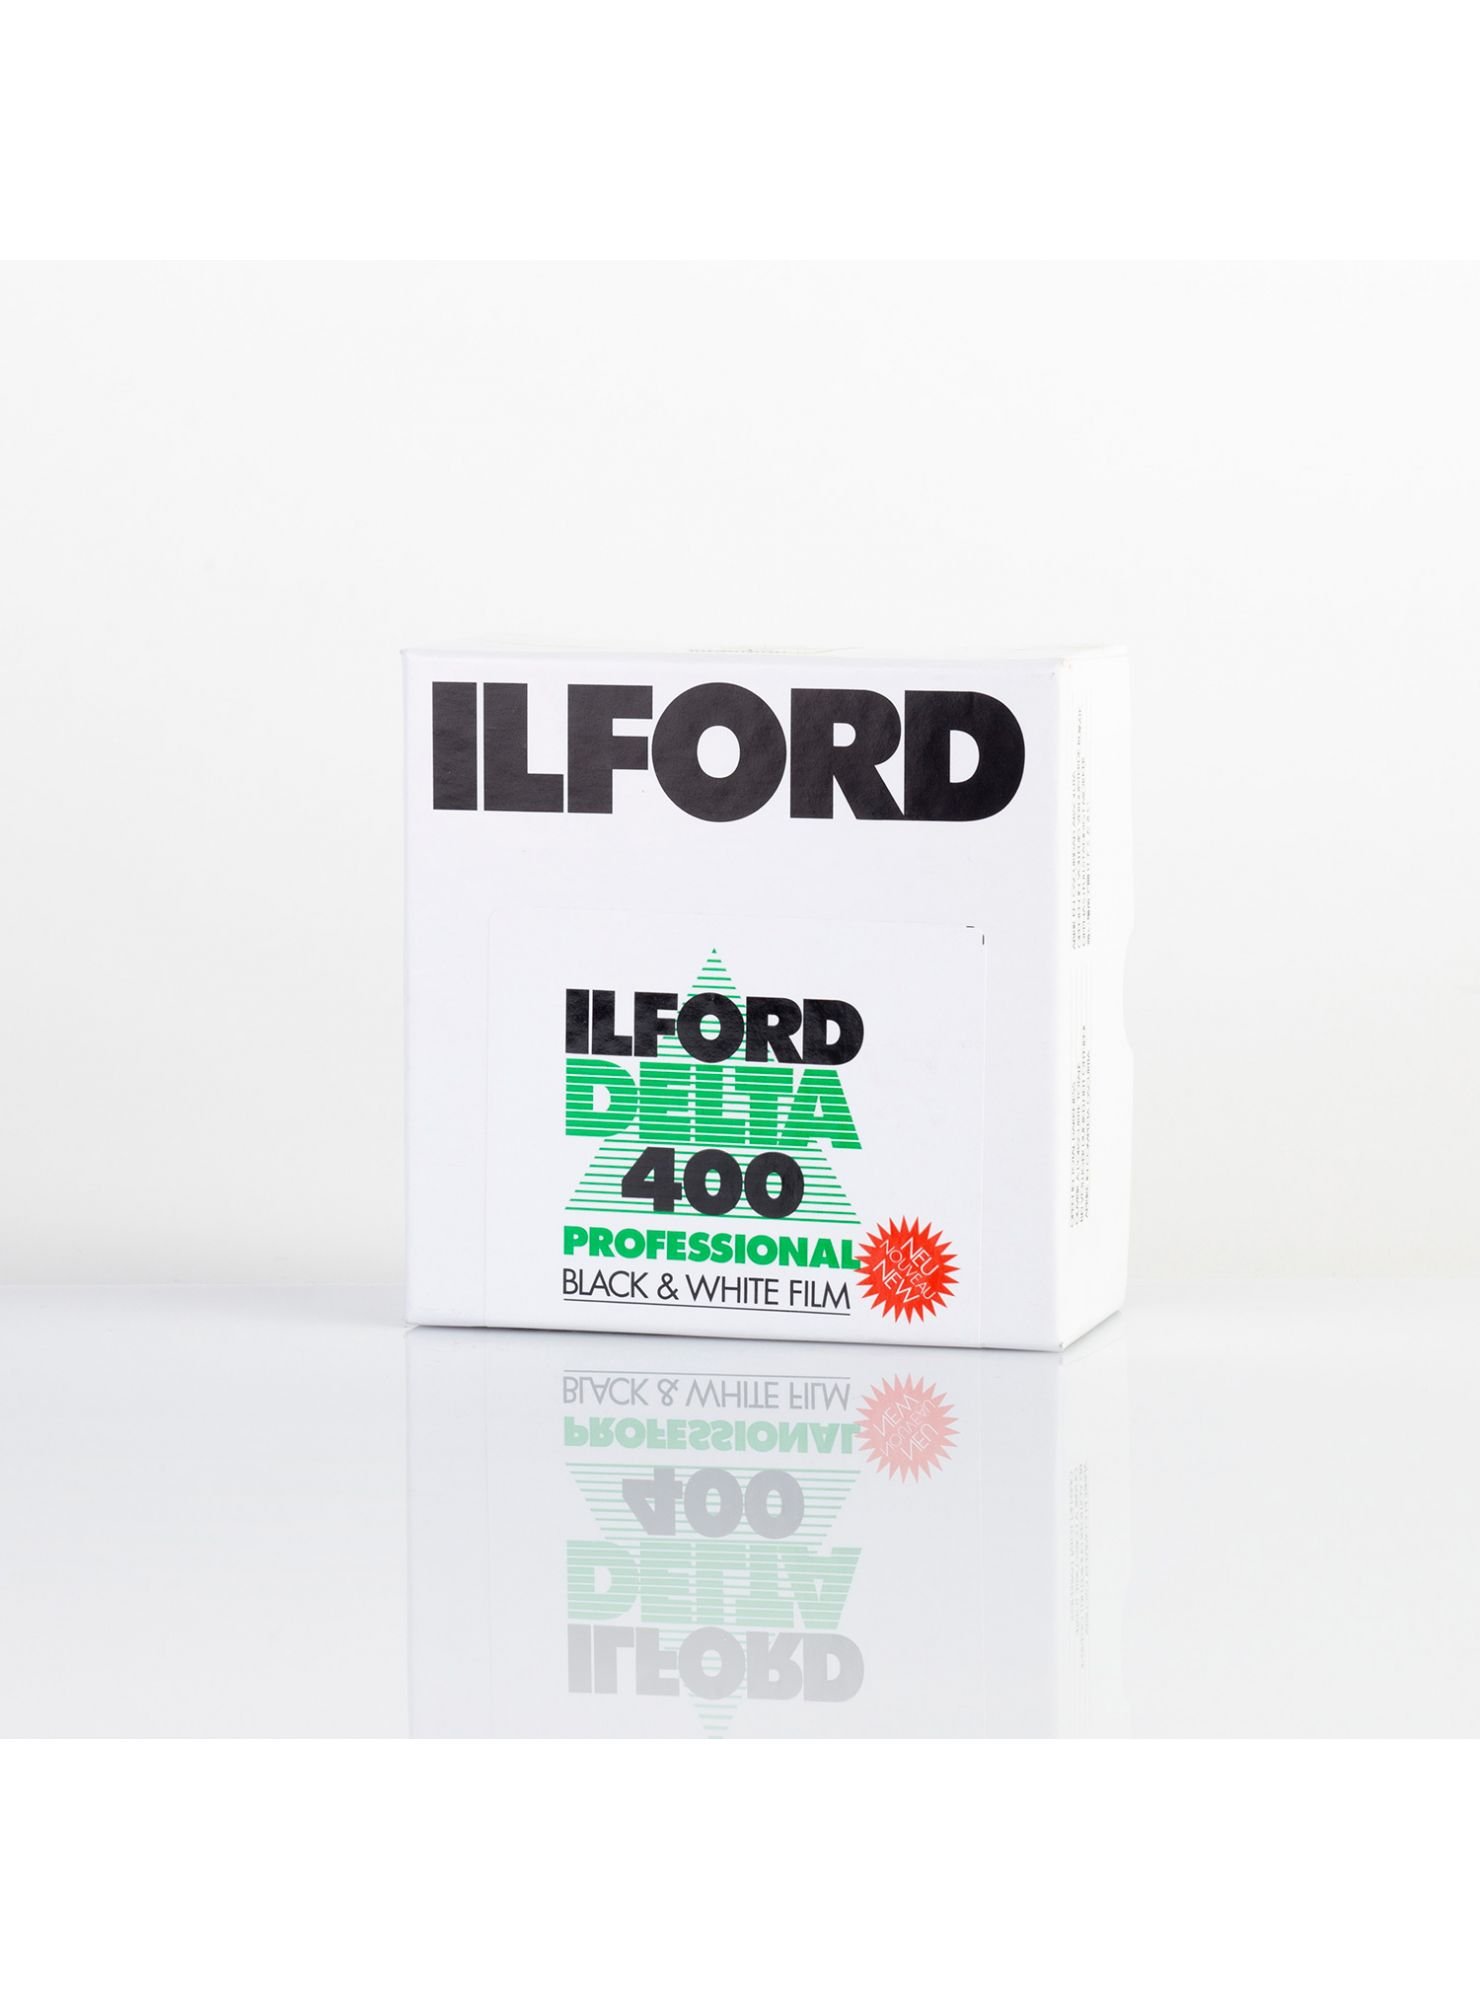 ILFORD Delta Professionnal 400 ISO - 35mm x 30,5 m